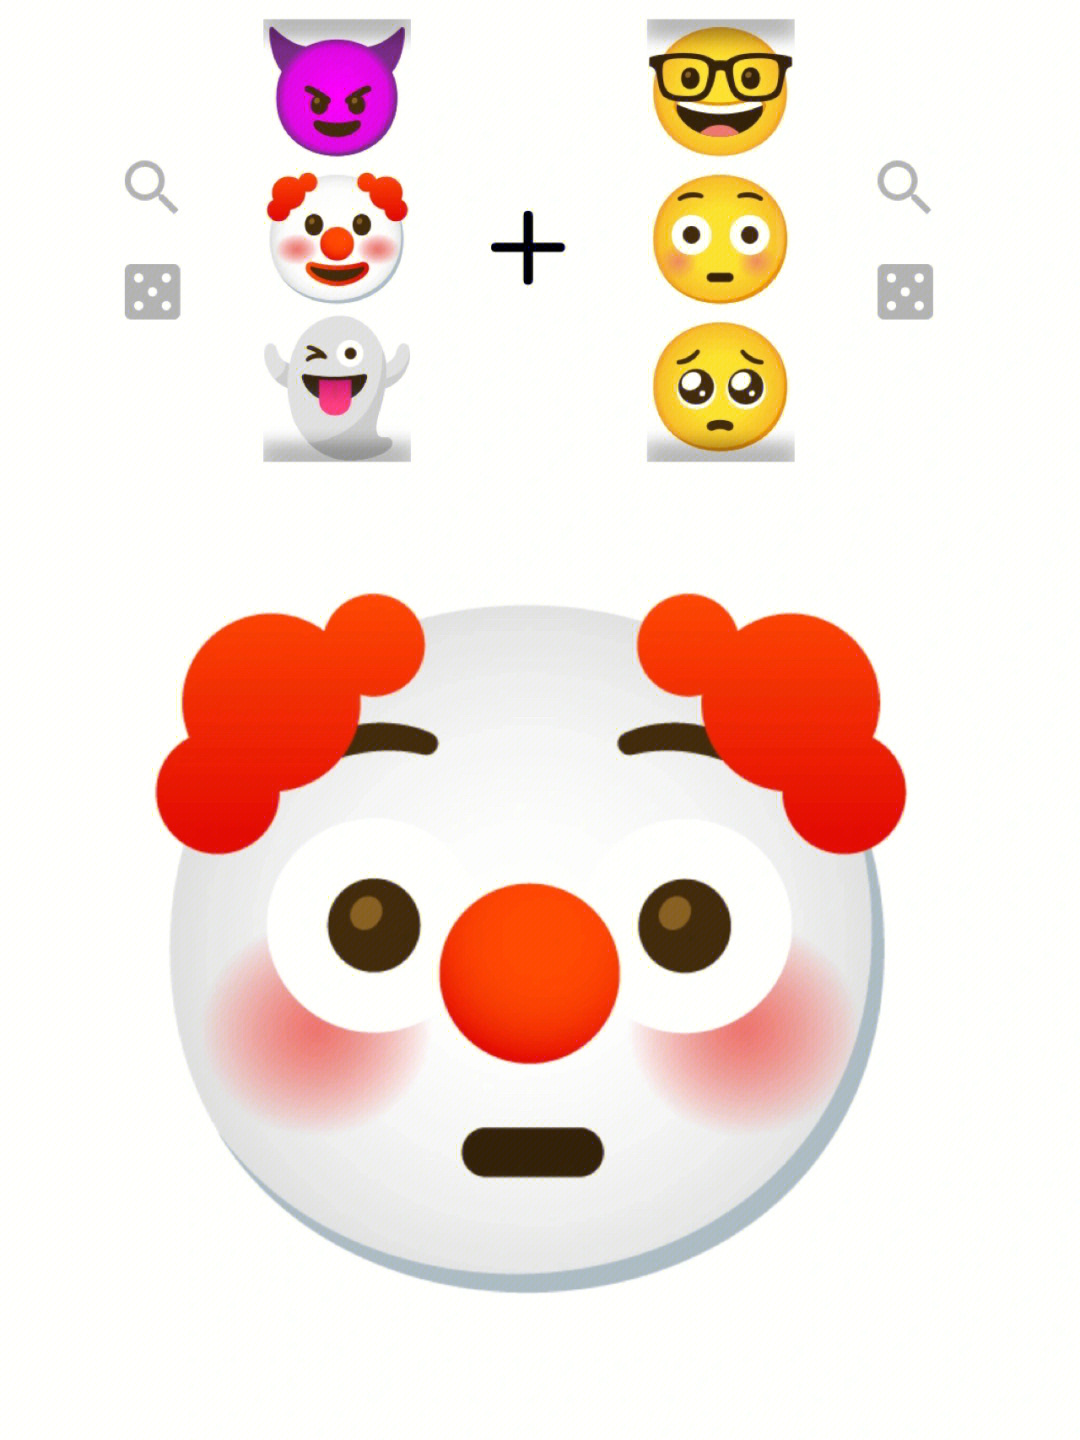 用emoji表情拼成小人图片